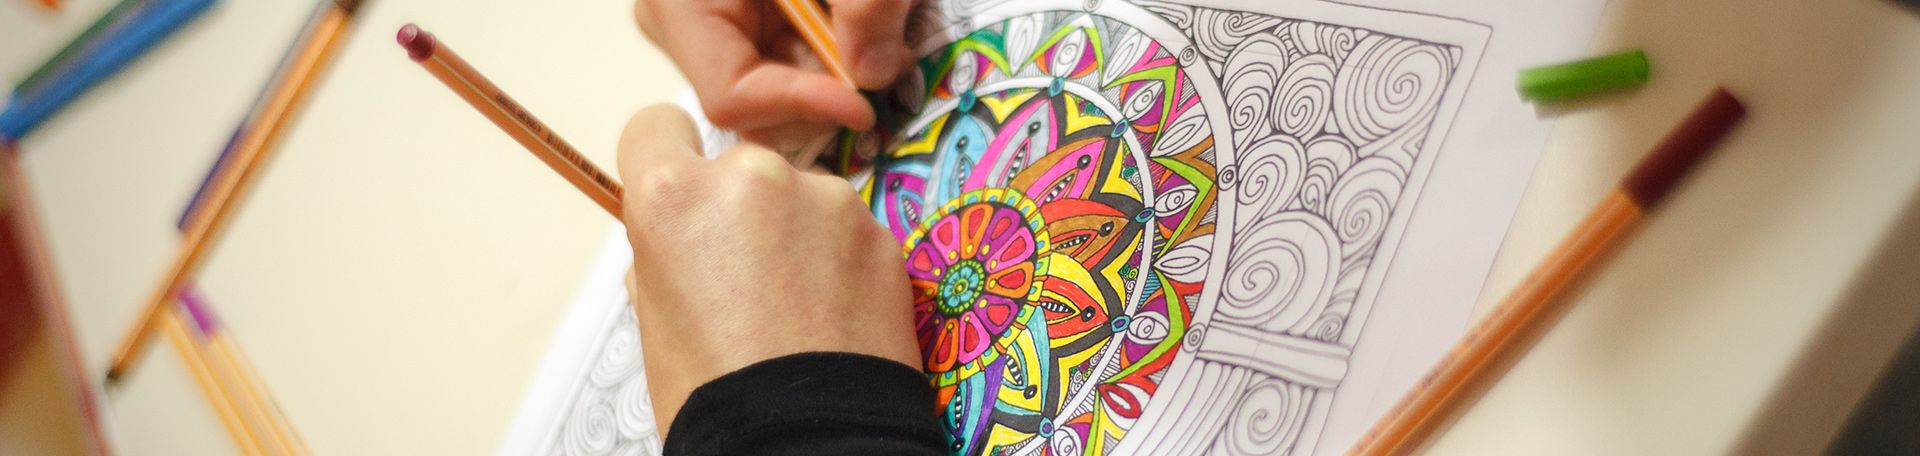 Kinder malen ein Mandala aus